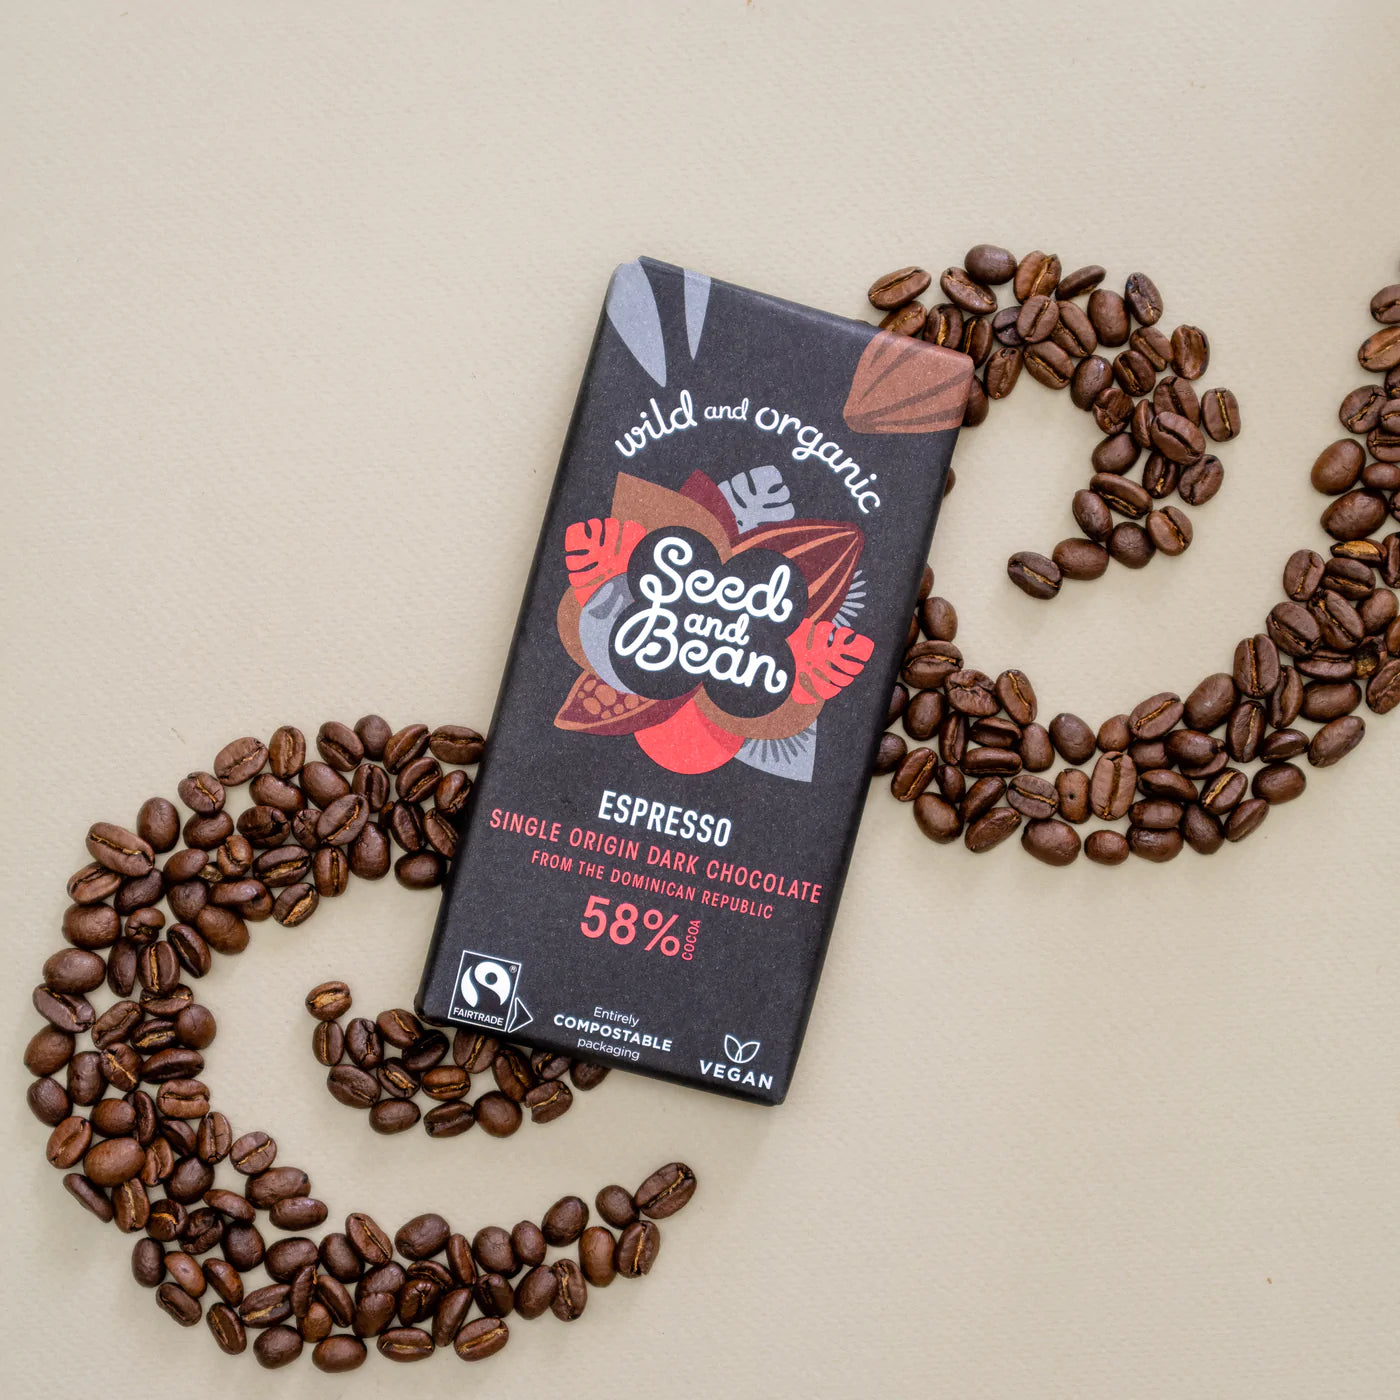 Seed & Bean 58% dökkt súkkulaði með espresso kaffi. Lífrænt og vegan. 75g.